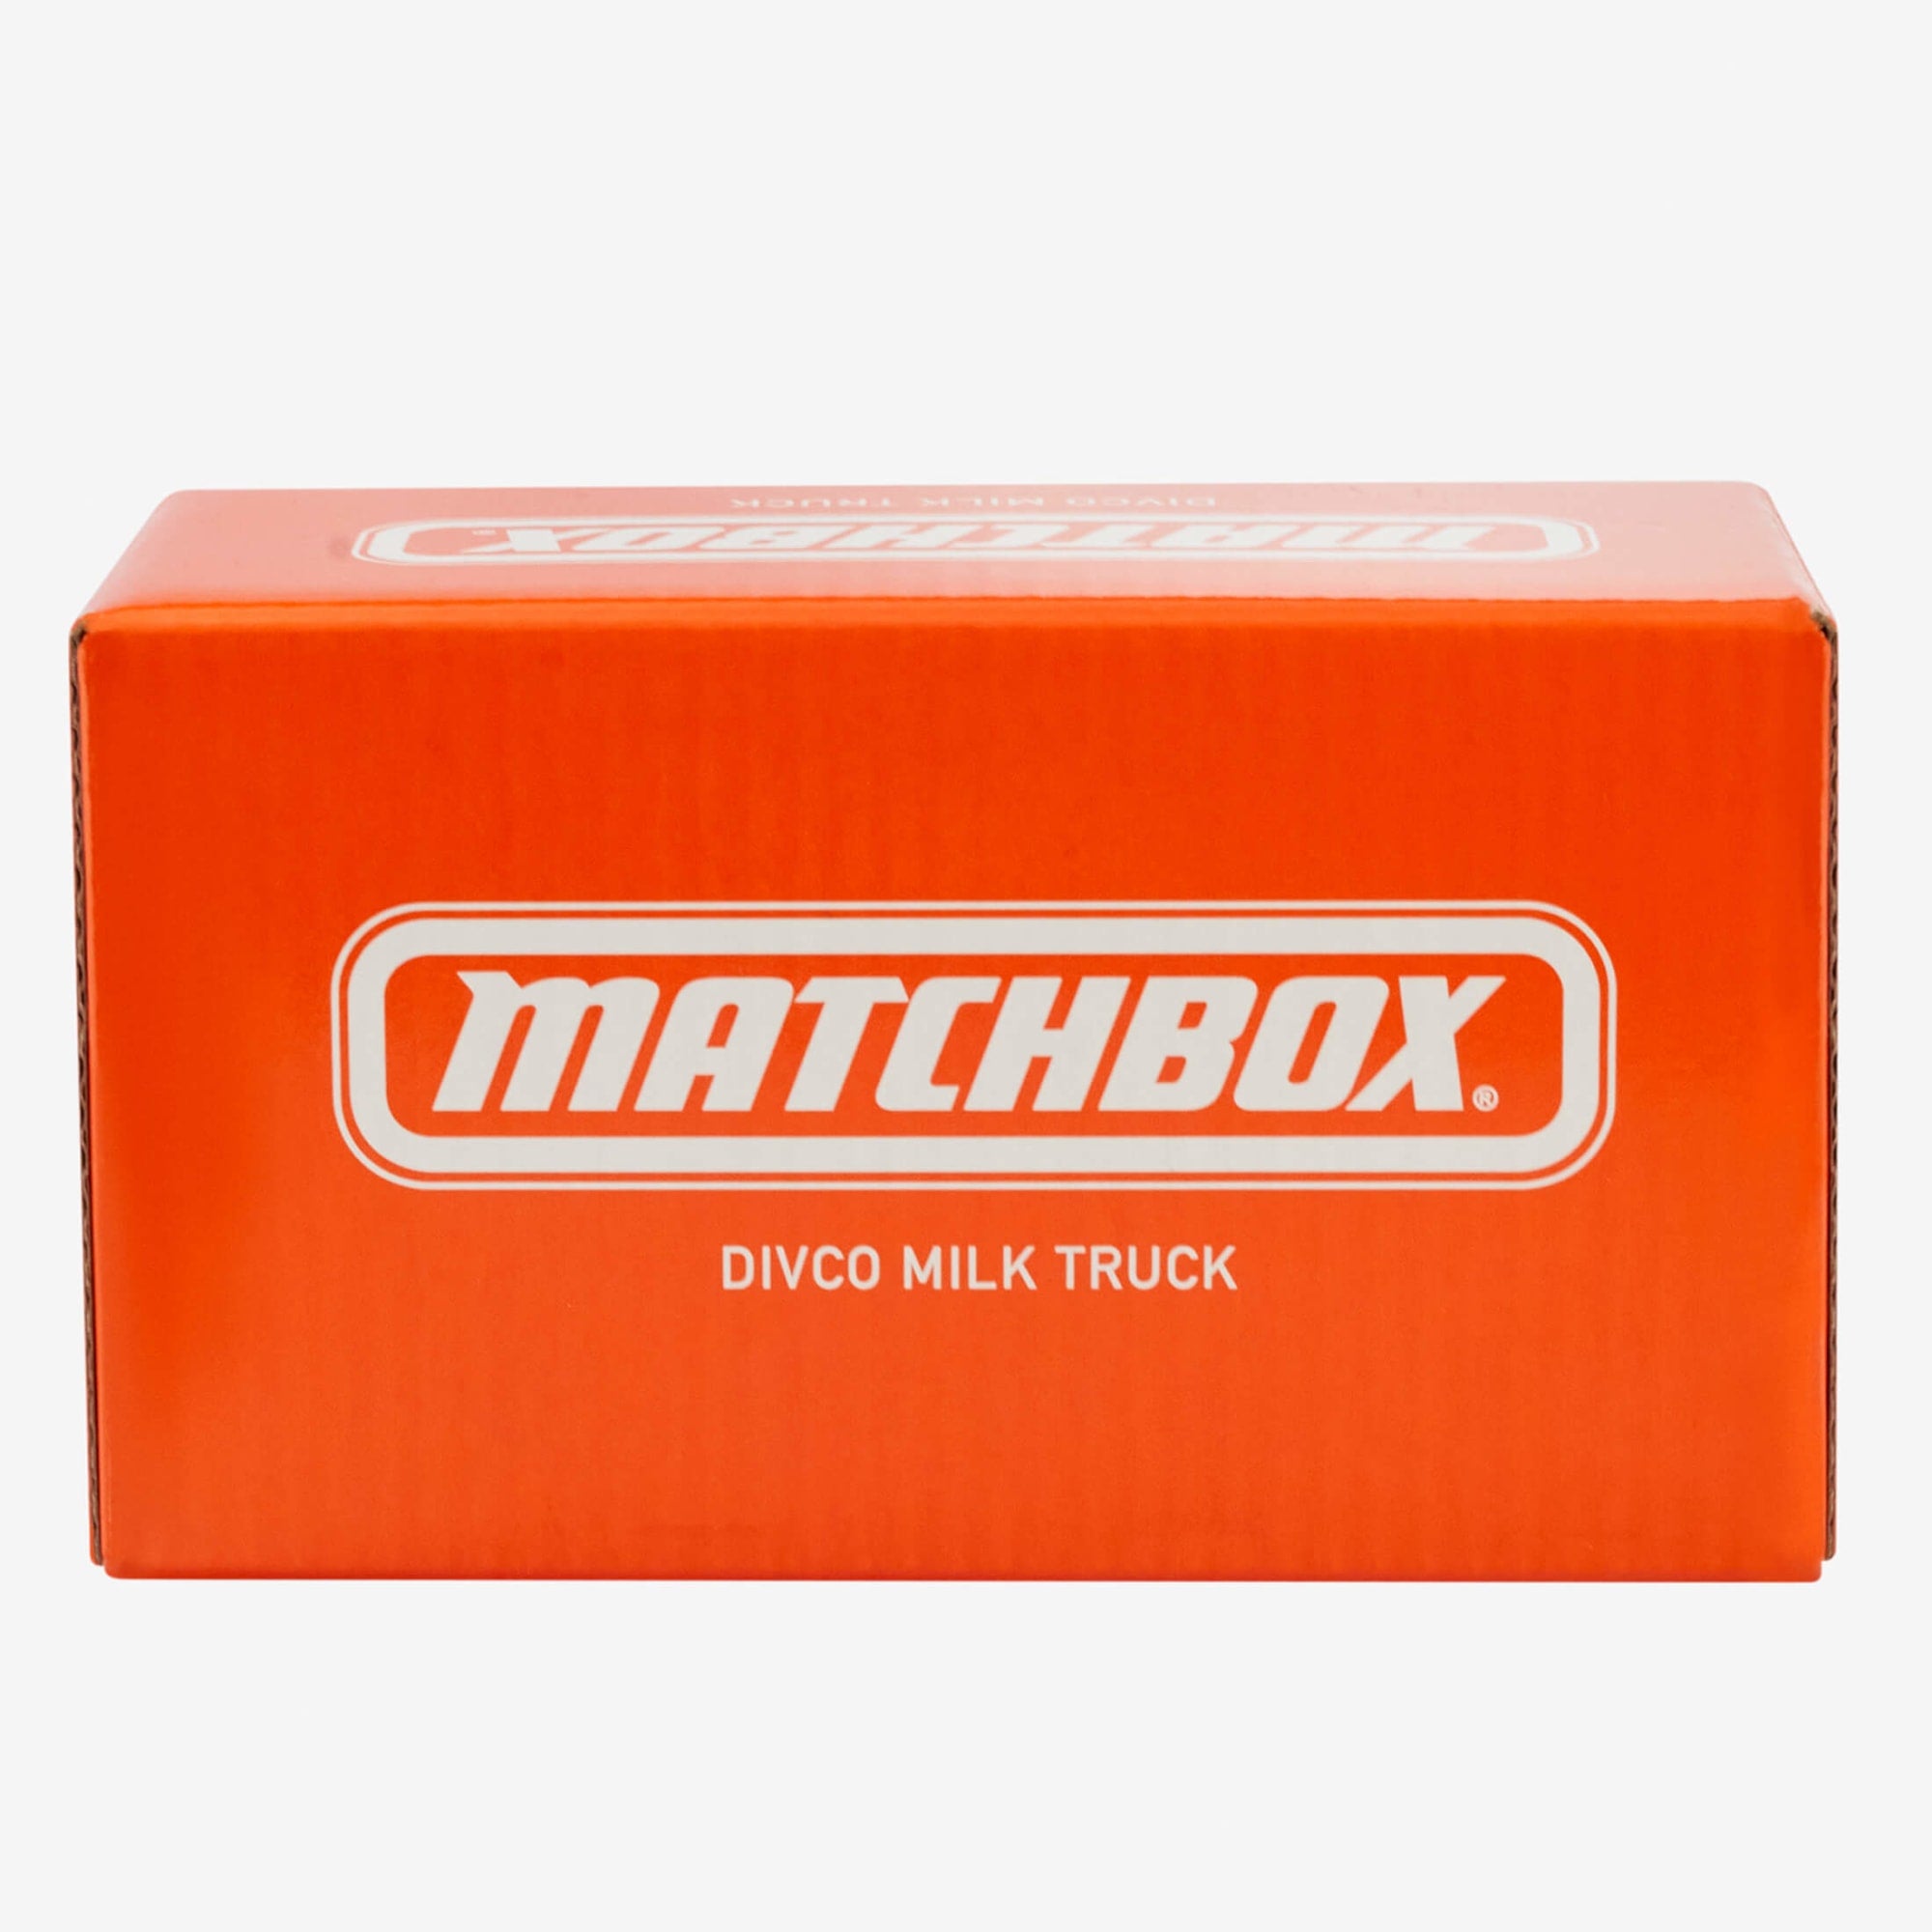 Matchbox Tootsie Roll Divco Milk Truck